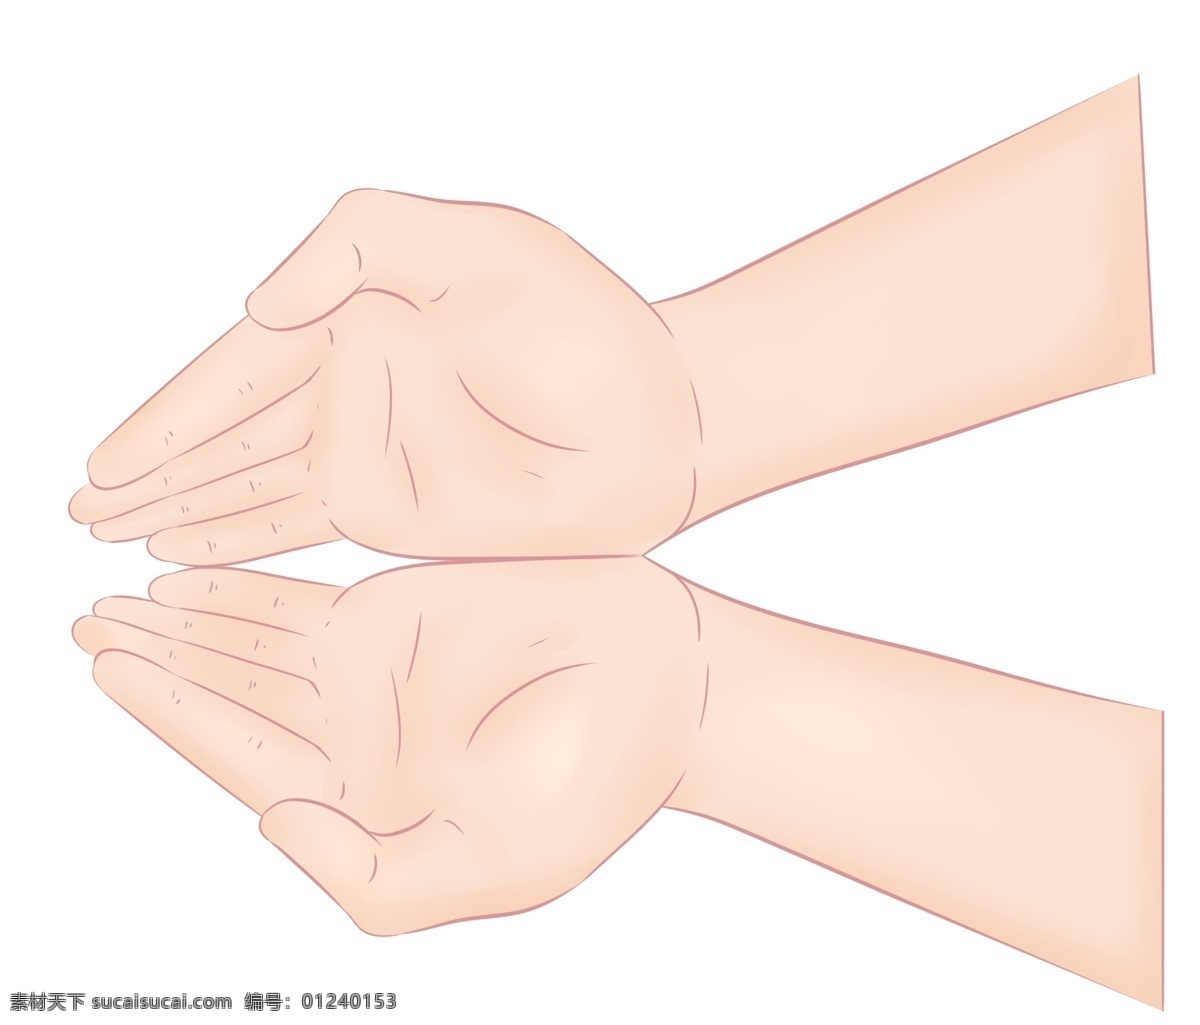 接 住手 势 卡通 插画 接住的手势 卡通插画 手势的插画 肢体语言 哑语 摆姿势 手语 美丽的手势